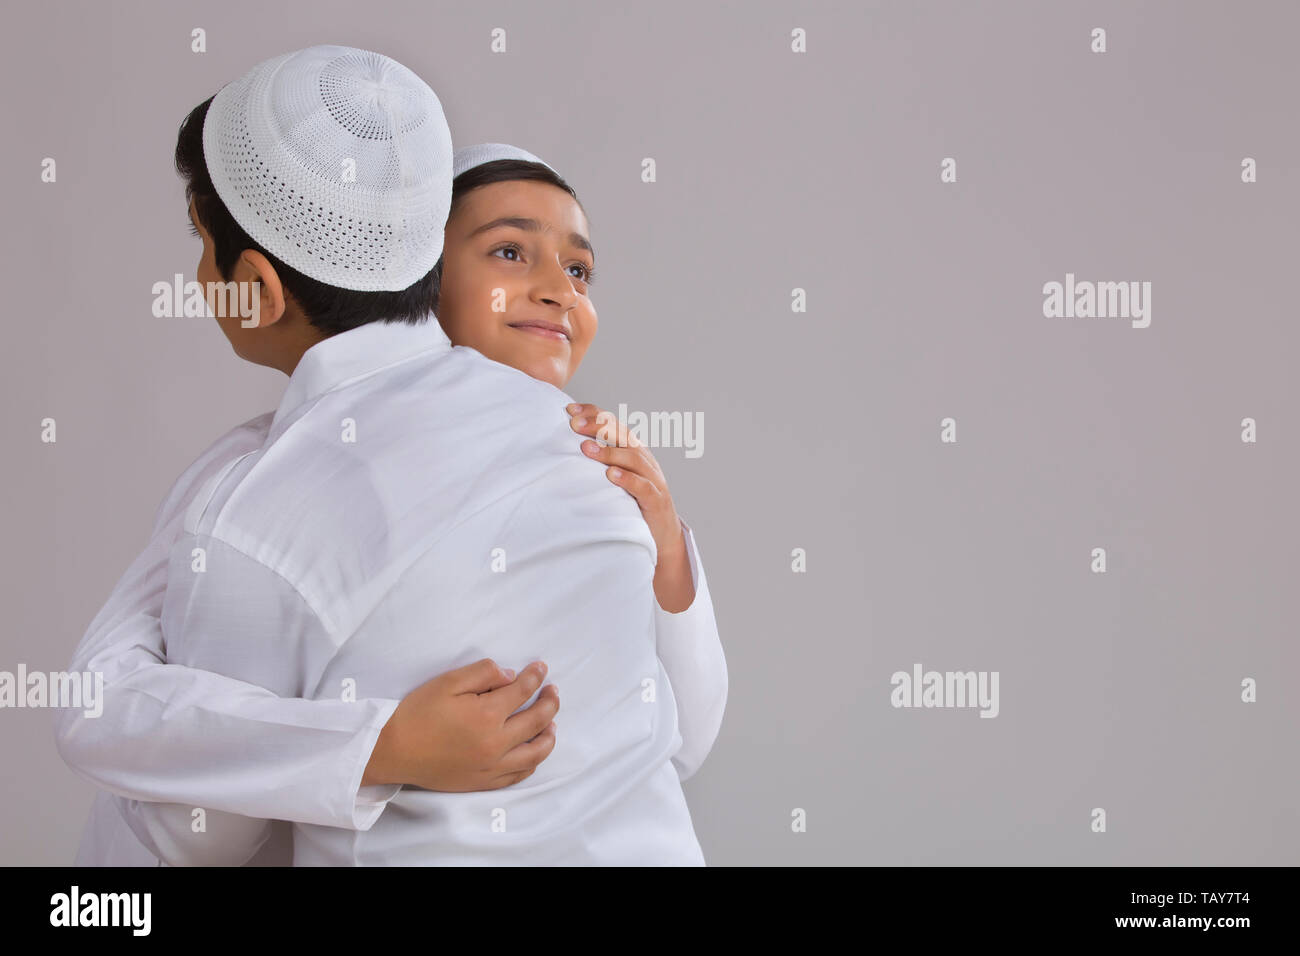 Les jeunes garçons musulmans à l'aide de capuchons serrant les uns les autres Banque D'Images